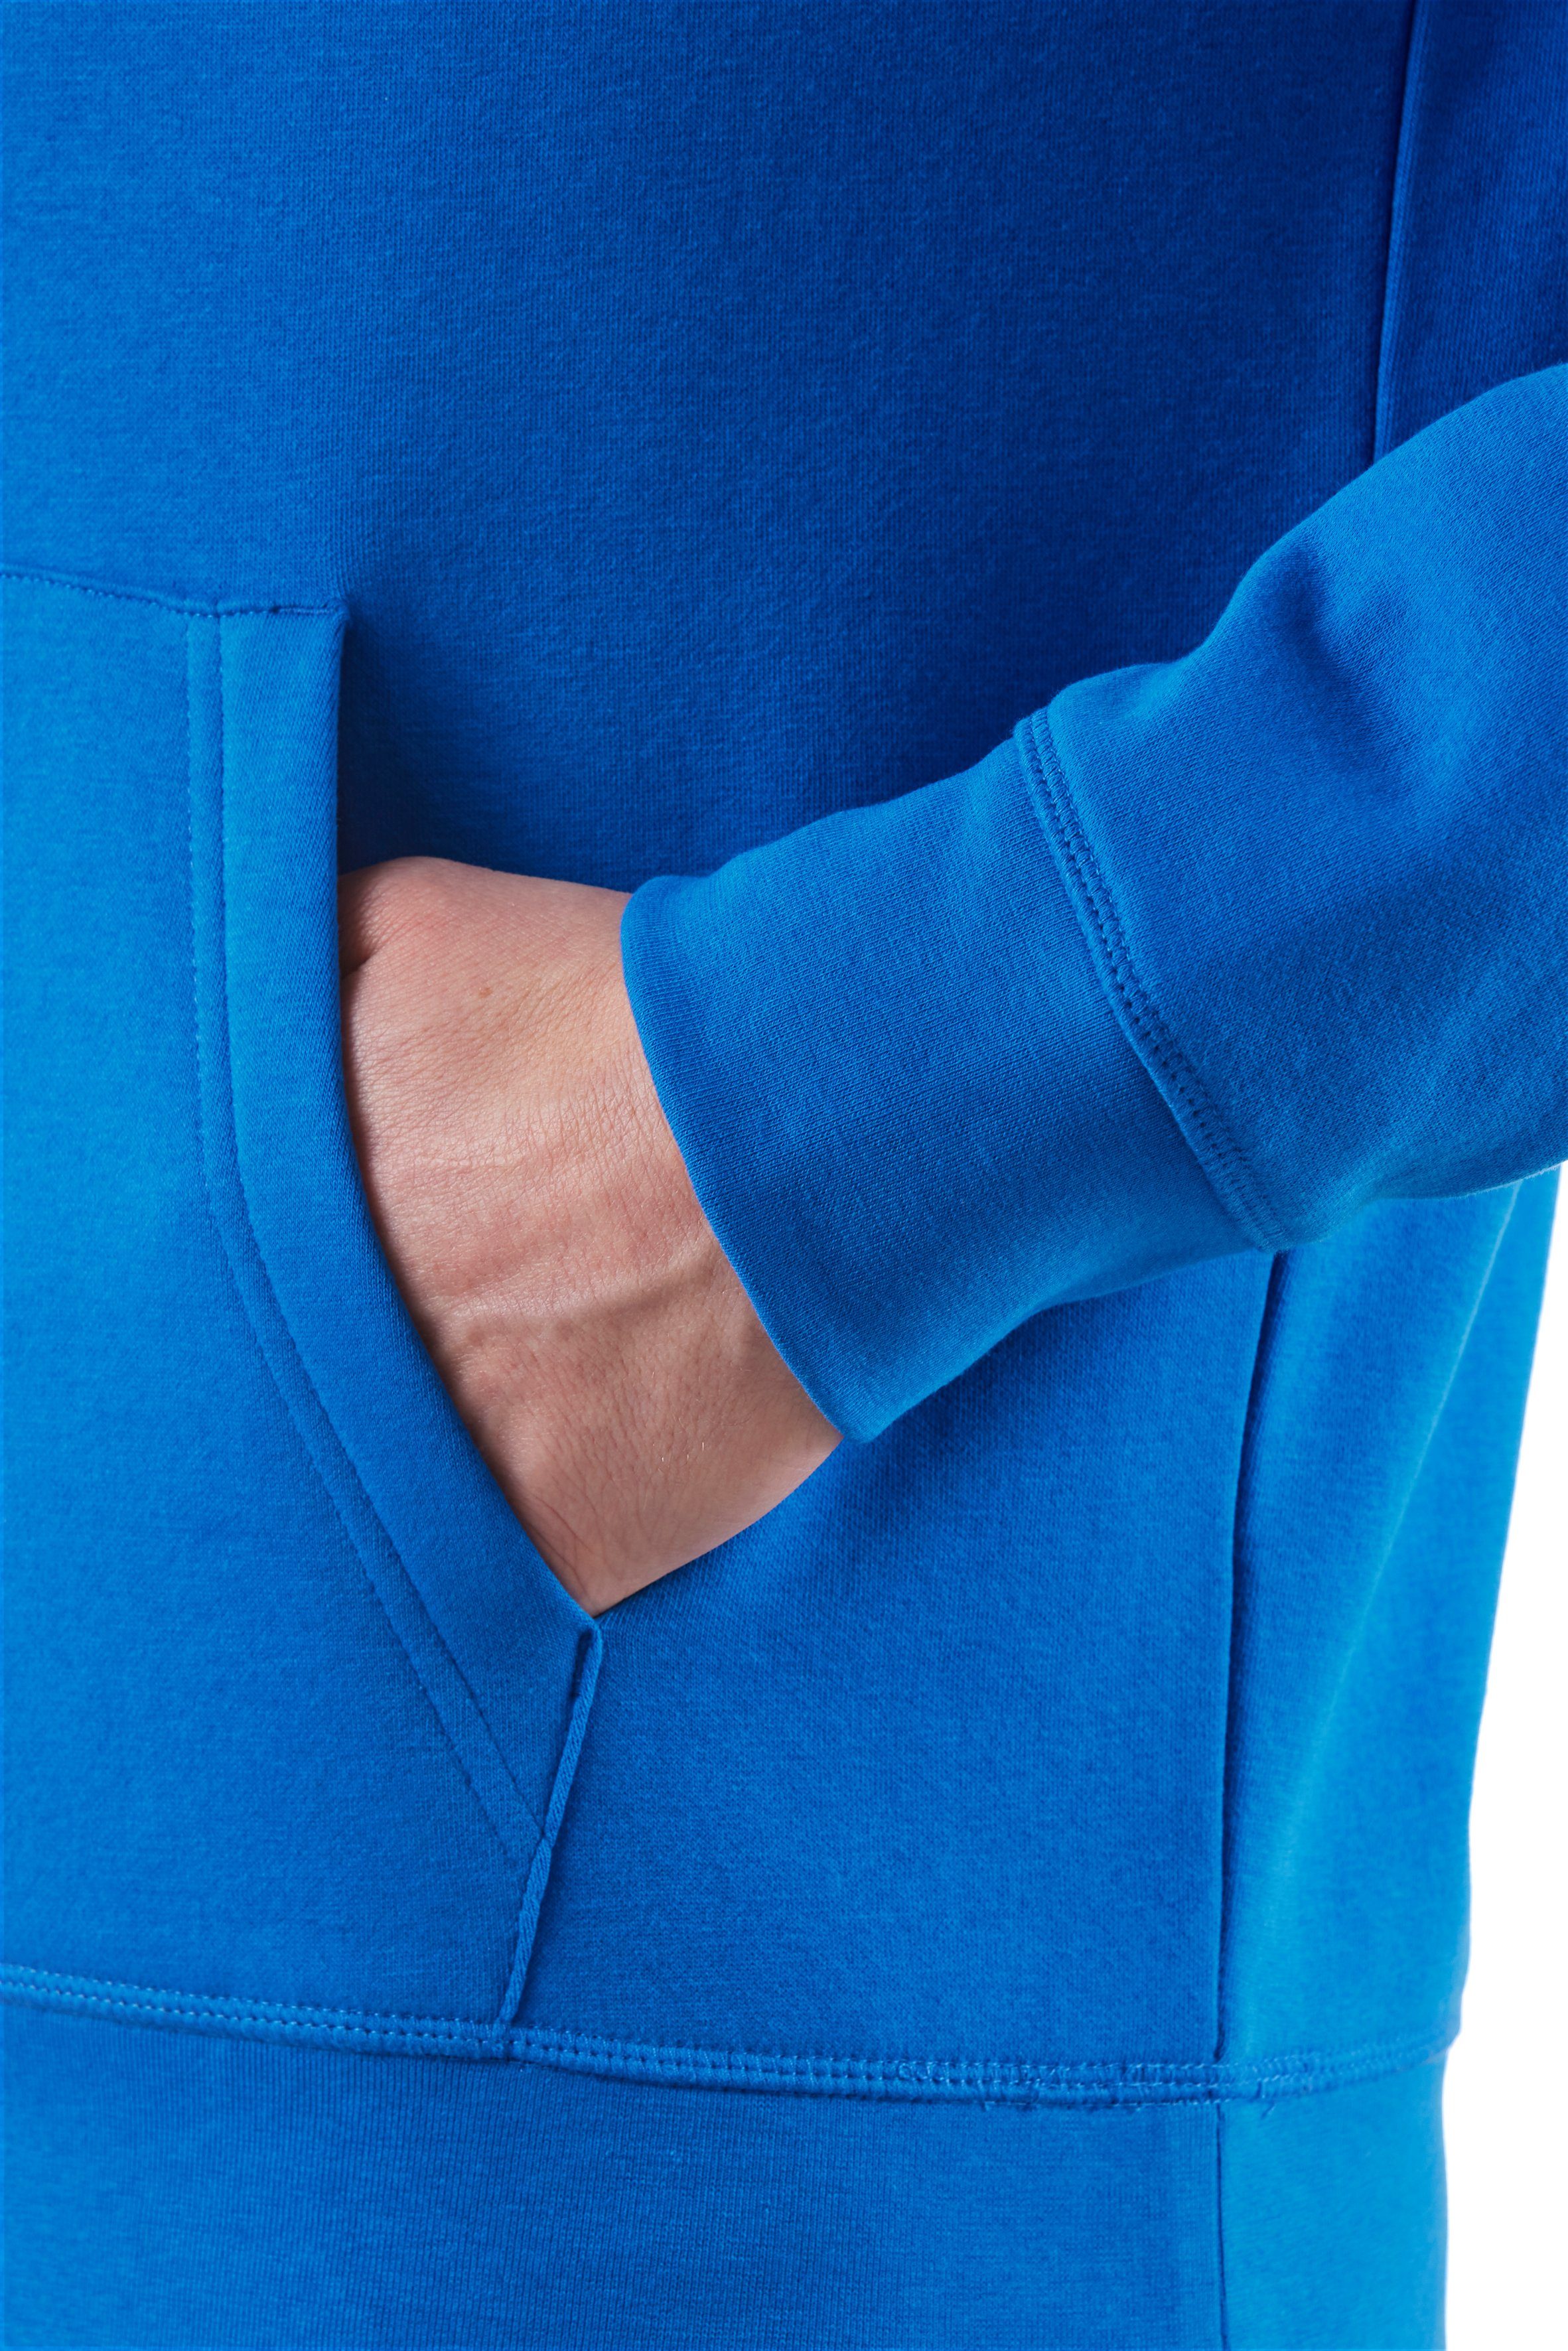 Northern Country Lapis mit Blue Kängurutasche zum Obermaterial, Hoodie Arbeiten, weiches perfekt